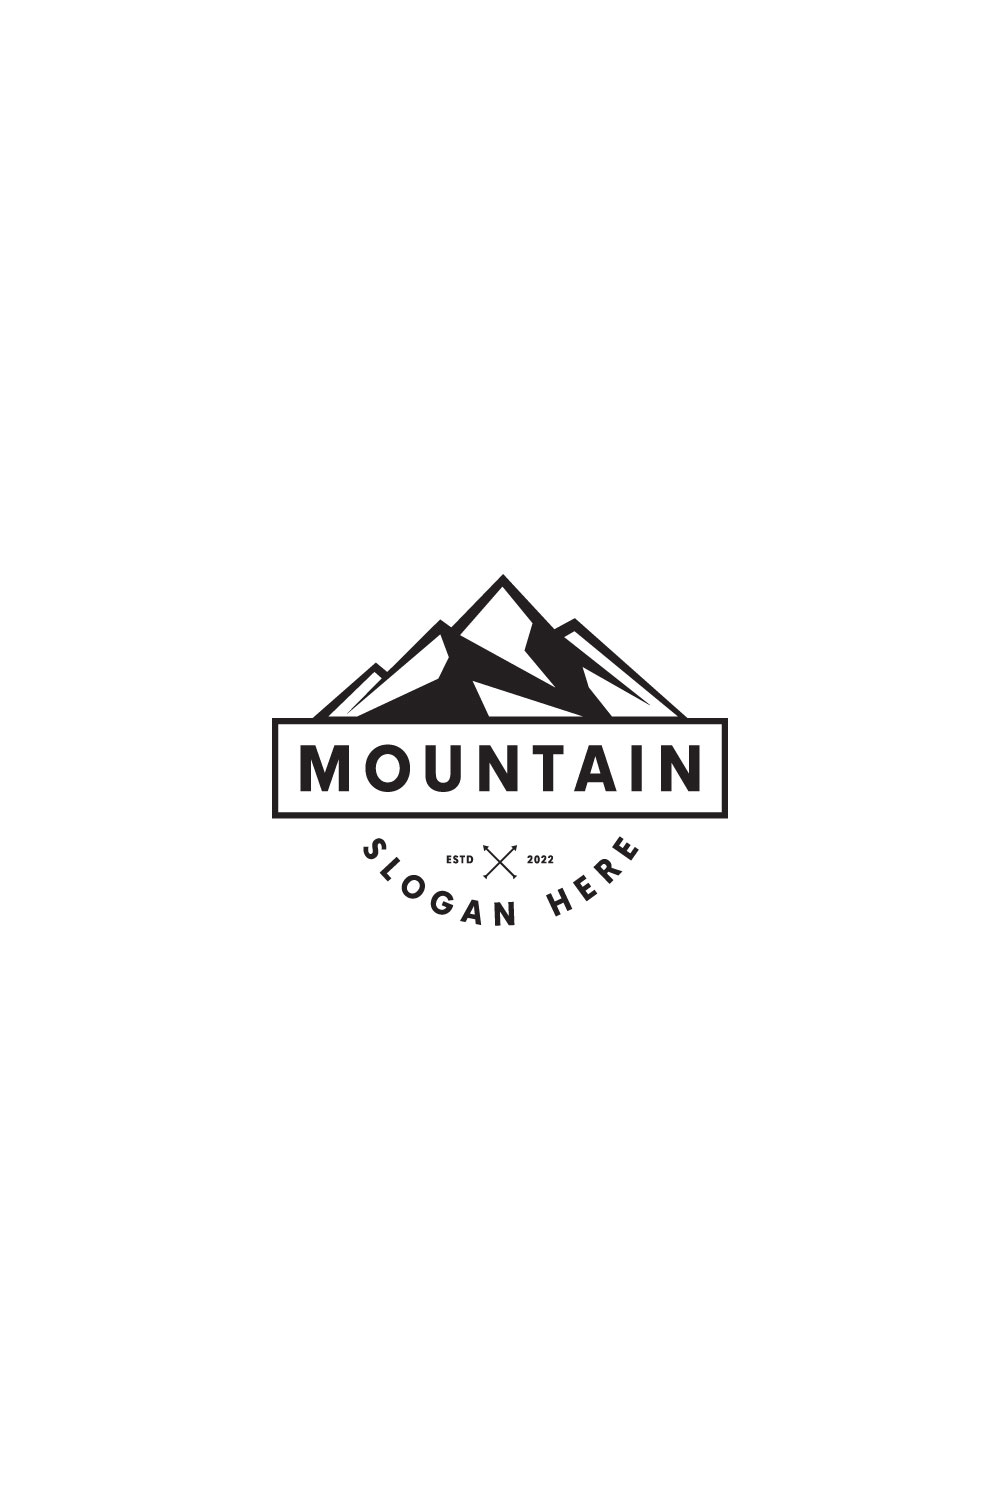 Mountain Logo Vector Design - Pinterest.